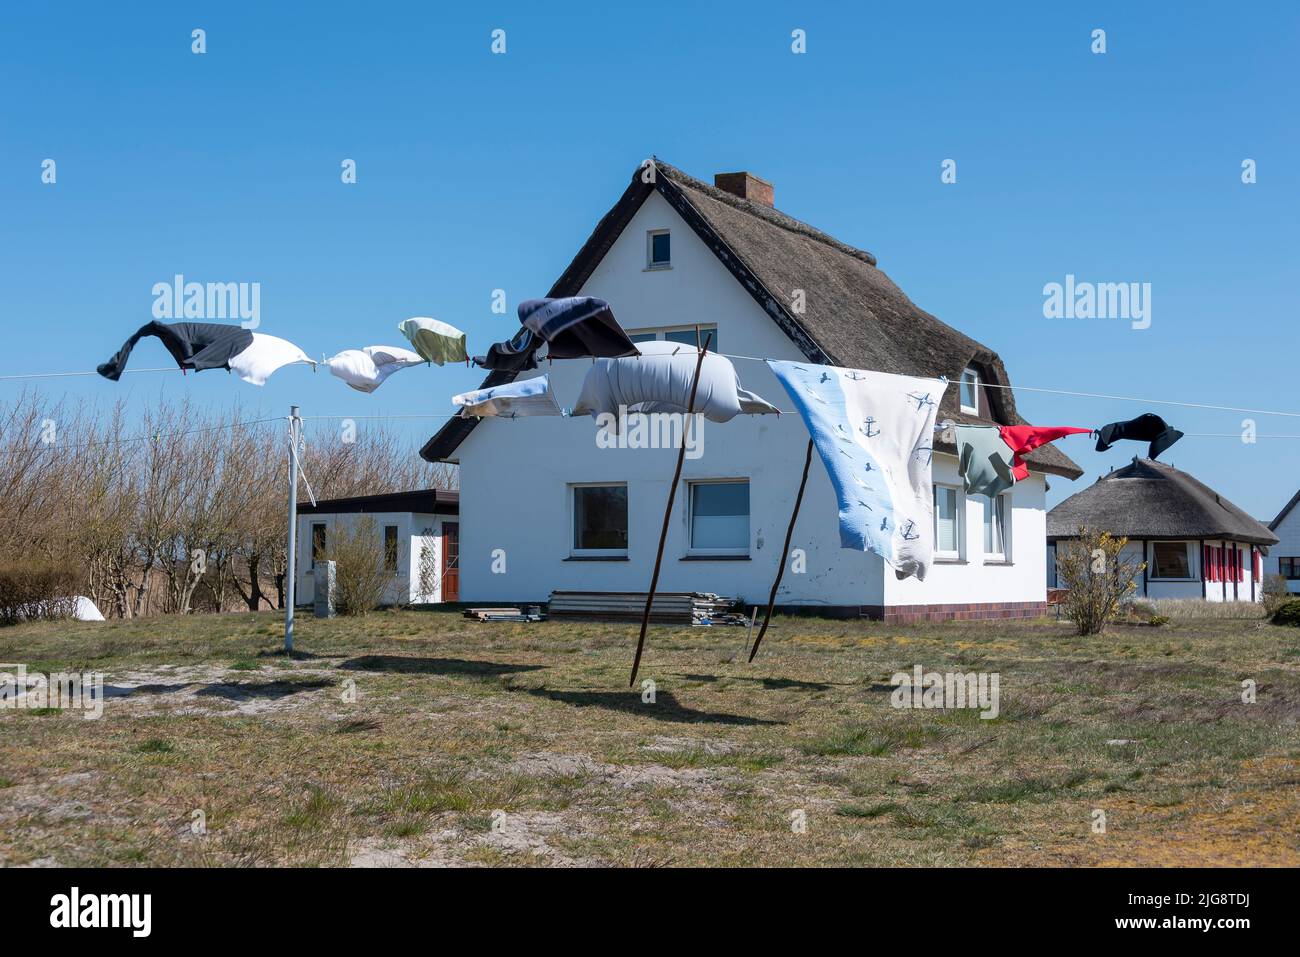 Blanchisserie flottant dans le vent, maison de chaume, Neuendorf, Ile de Hiddensee, Mecklenburg-Ouest Pomerania, Allemagne Banque D'Images